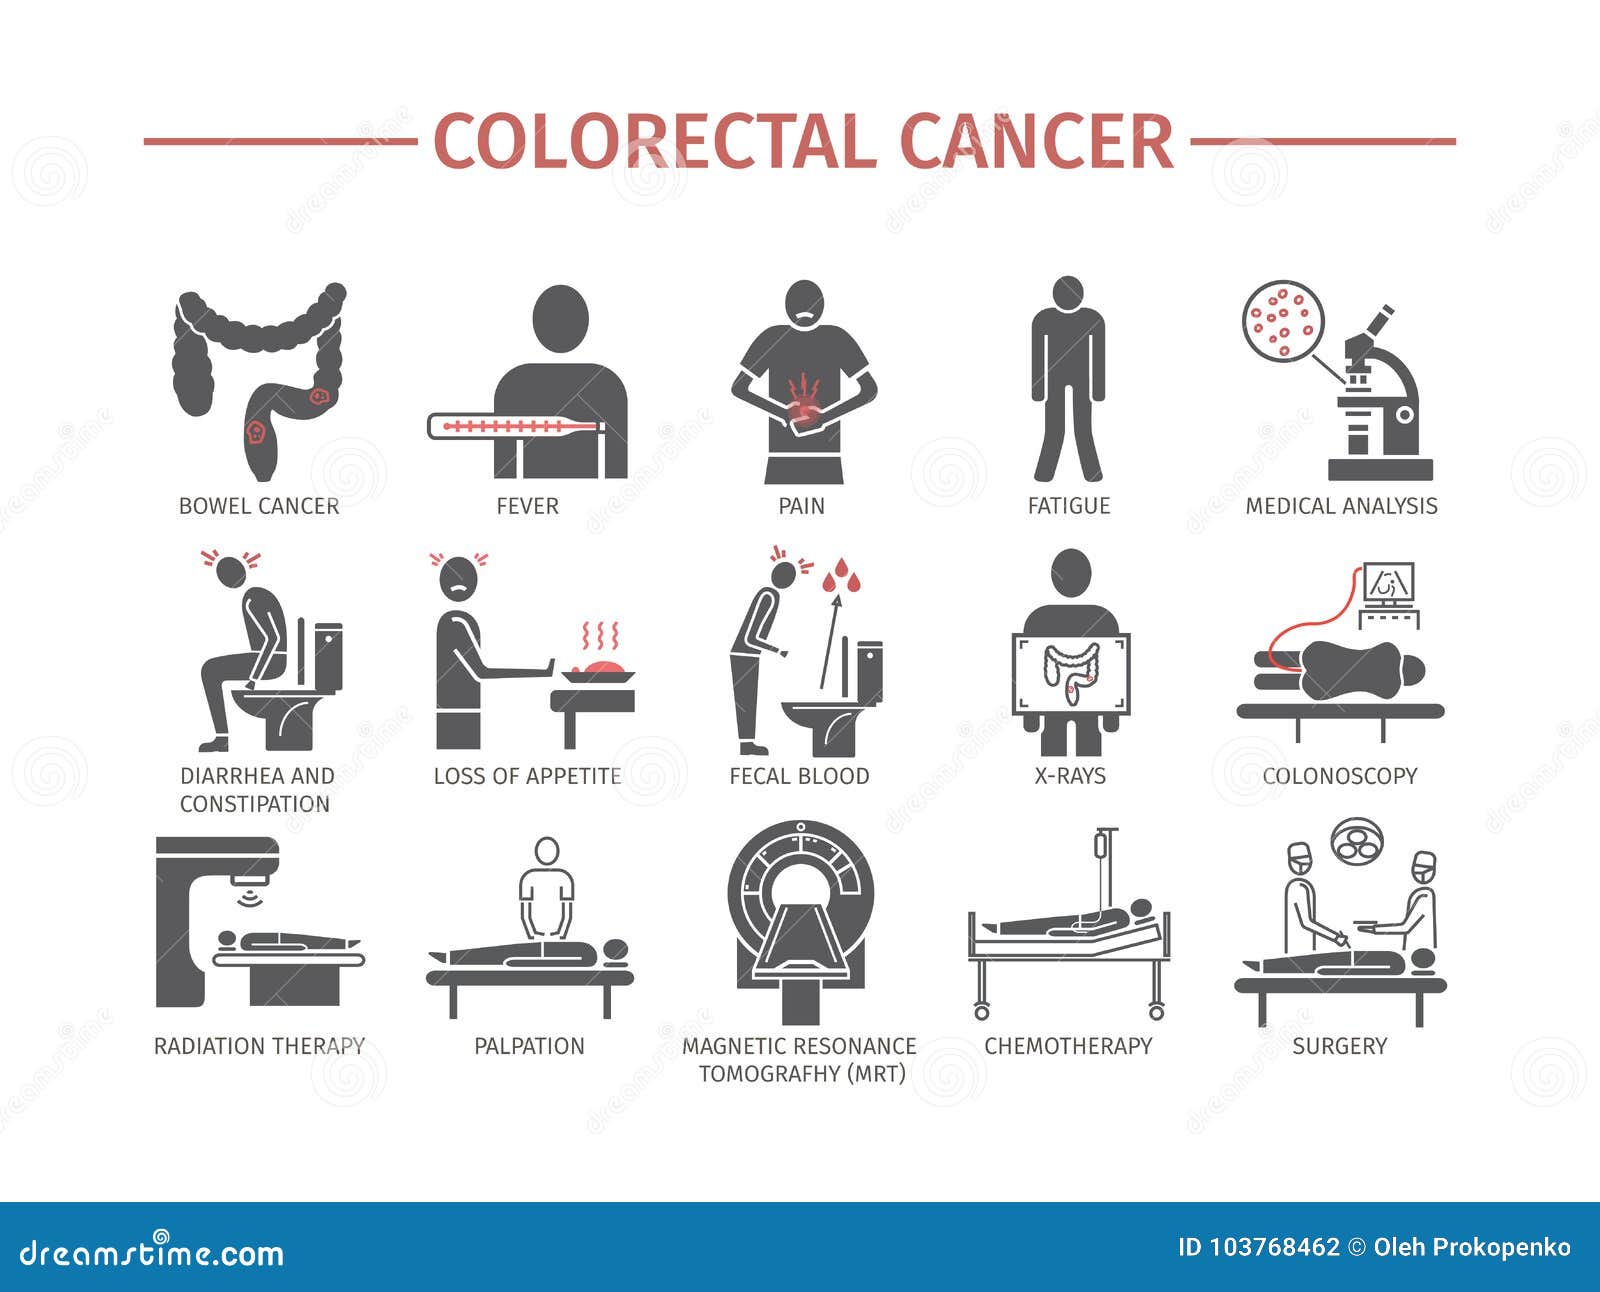 colorectal cancer symptom)